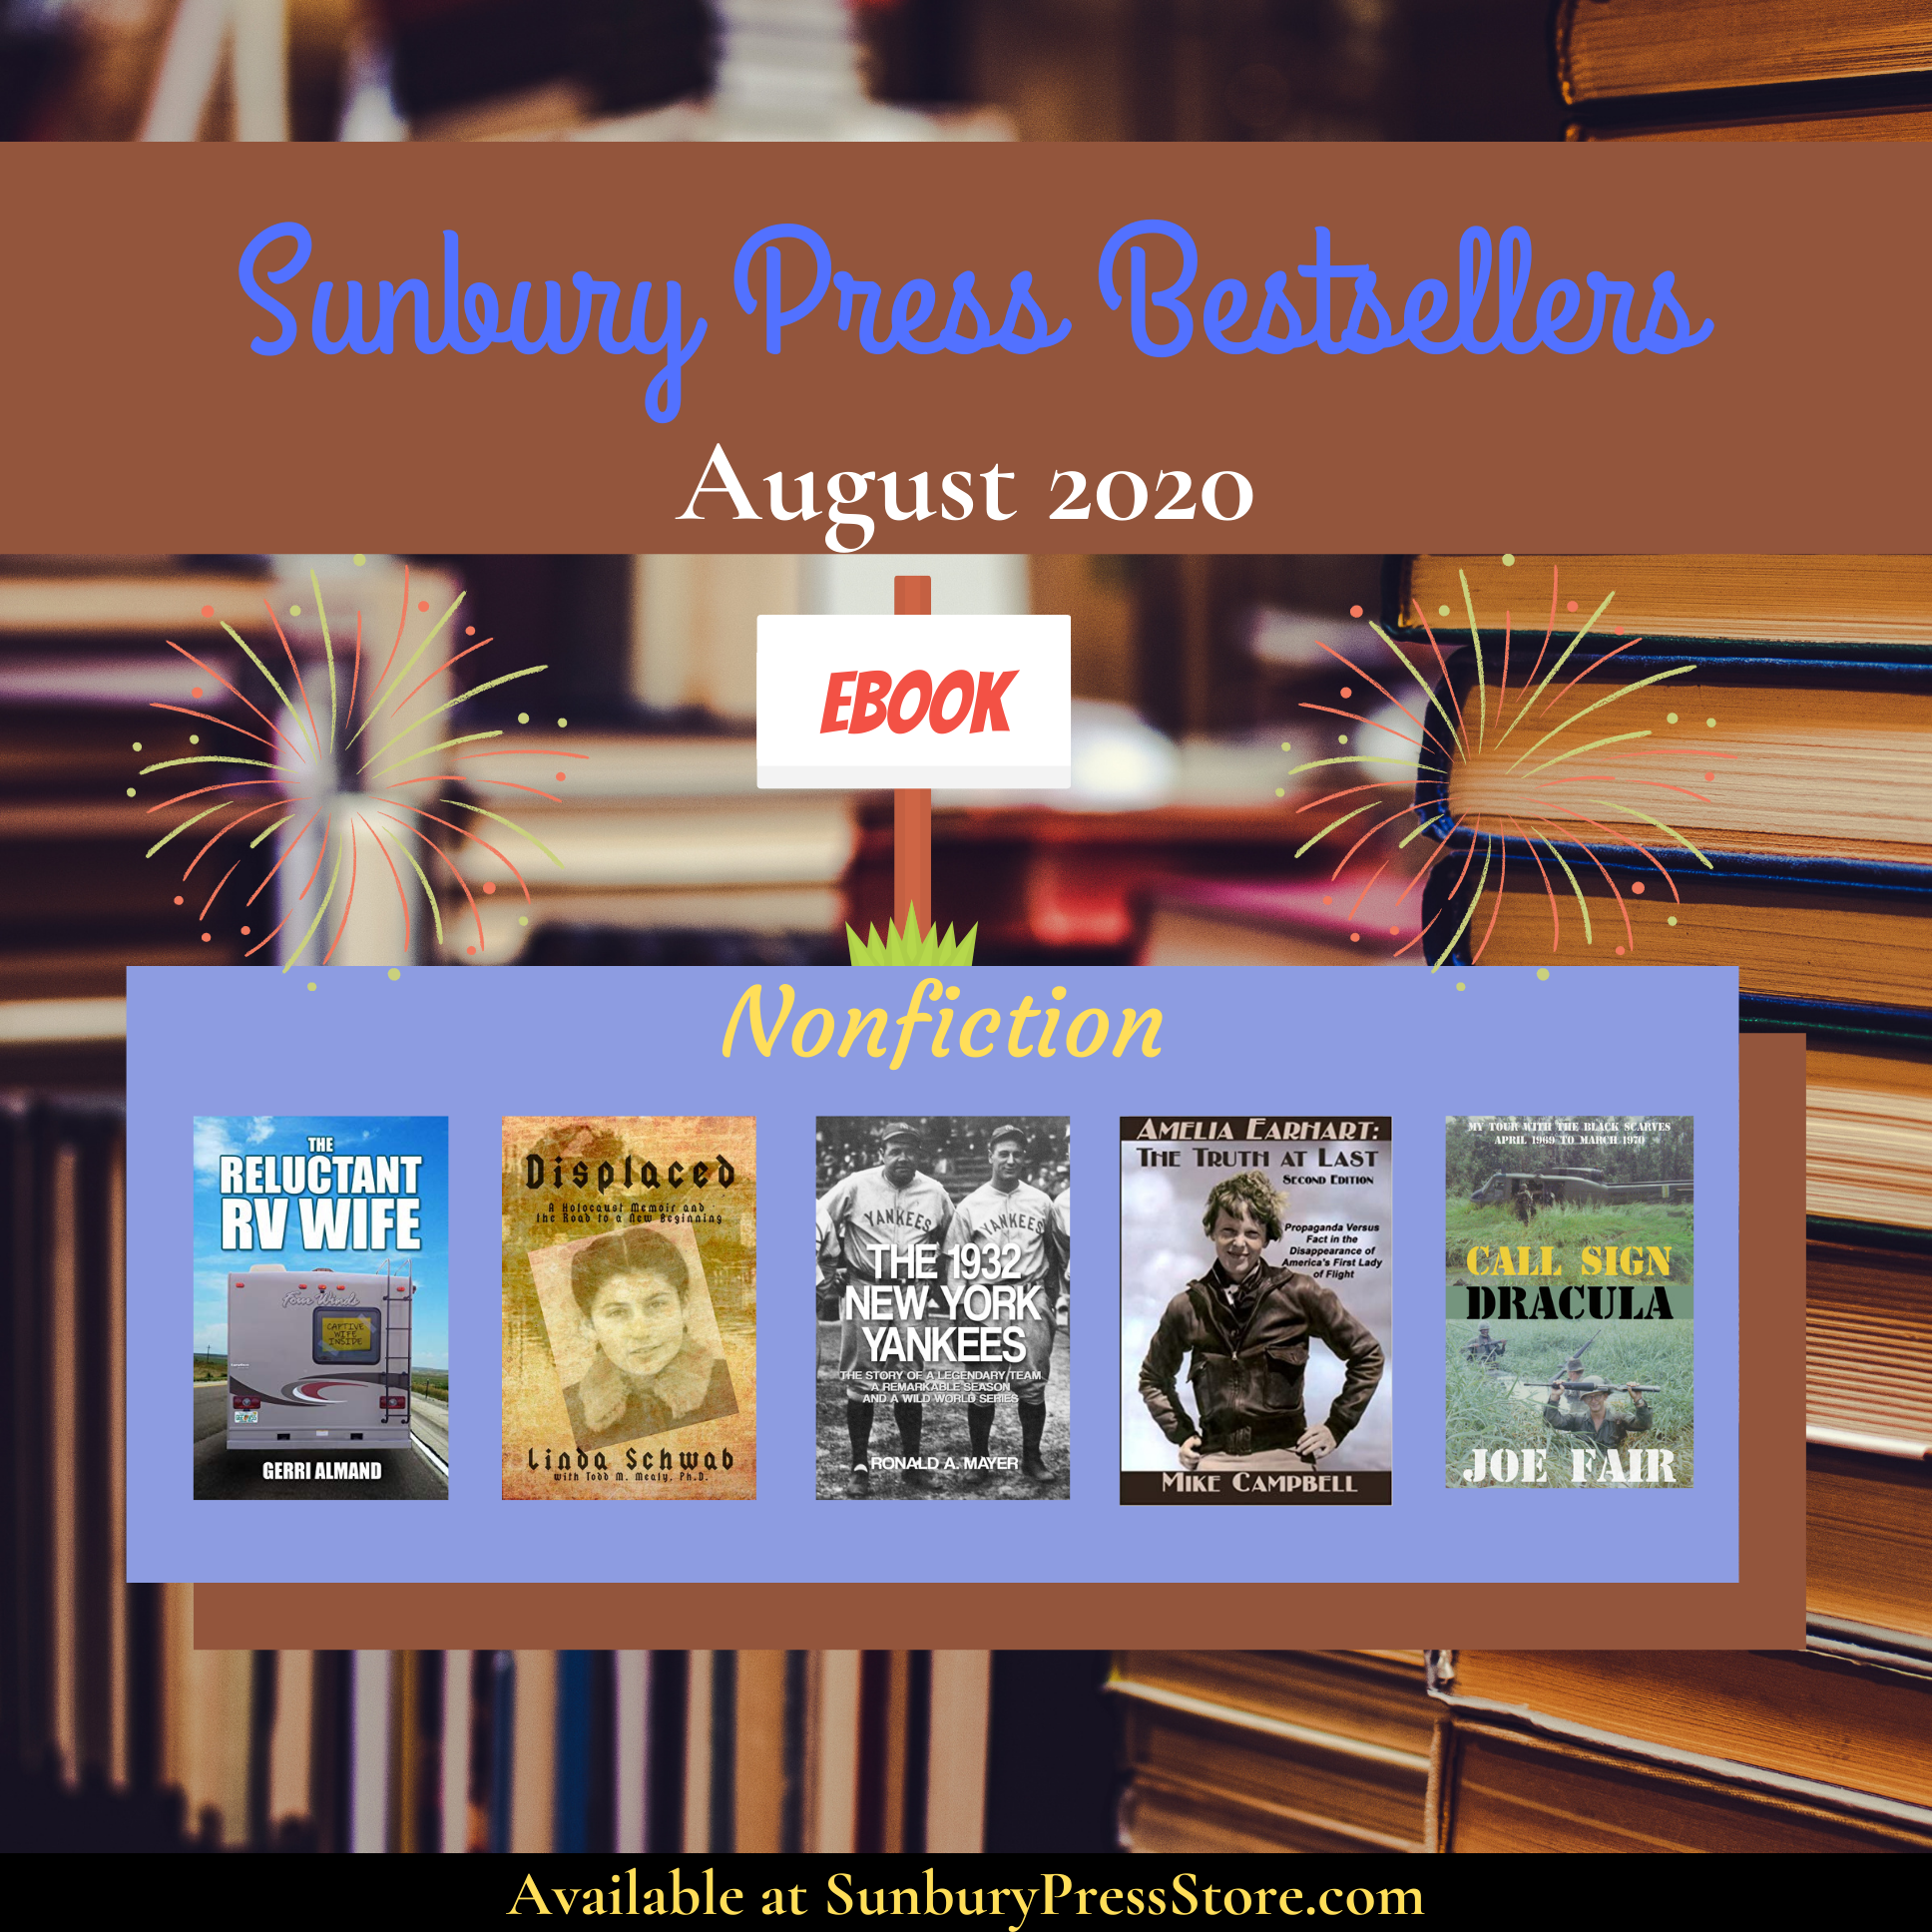 Sunbury Press Bestsellers: The Bestselling eBooks of August 2020